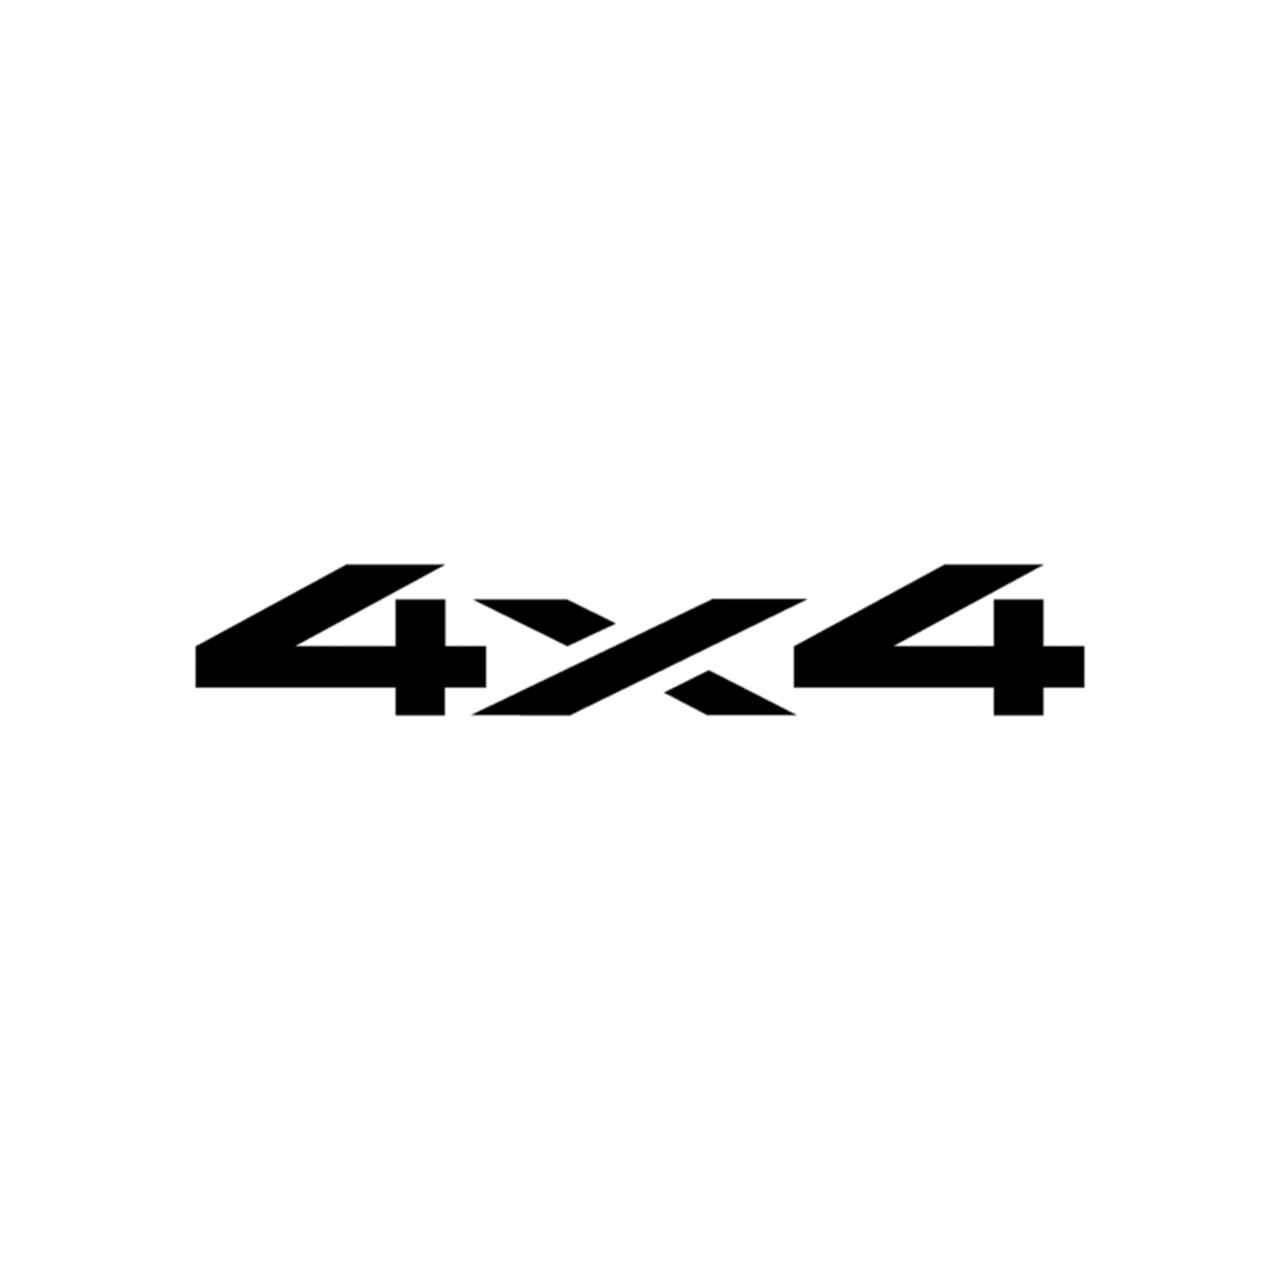 4x4 Logo - 4x4 Logo Set 27 Vinyl Decal